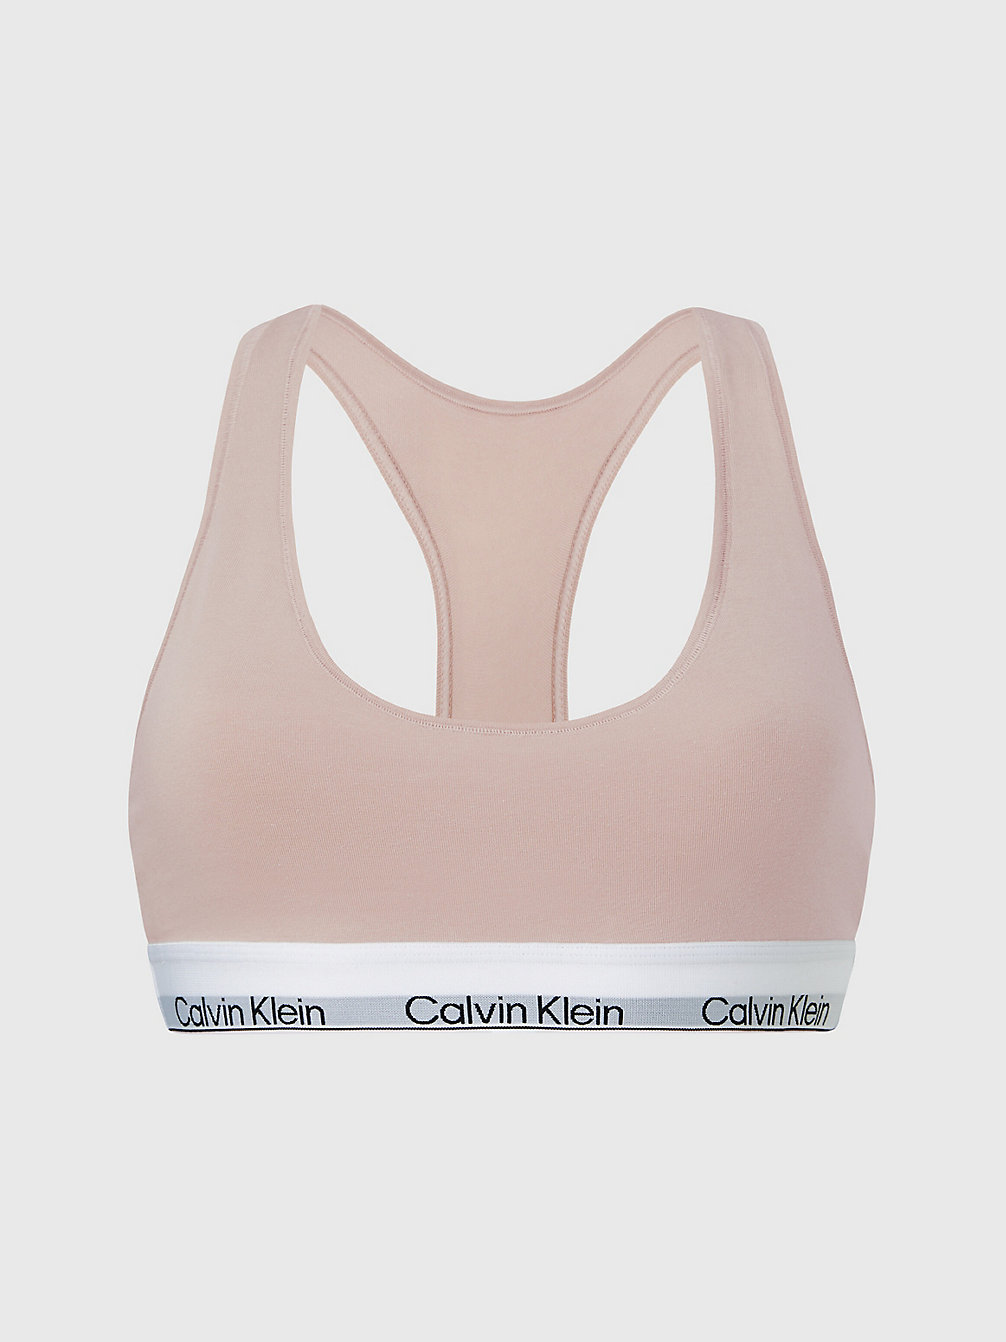 CEDAR > Бралетт - Modern Cotton > undefined Женщины - Calvin Klein